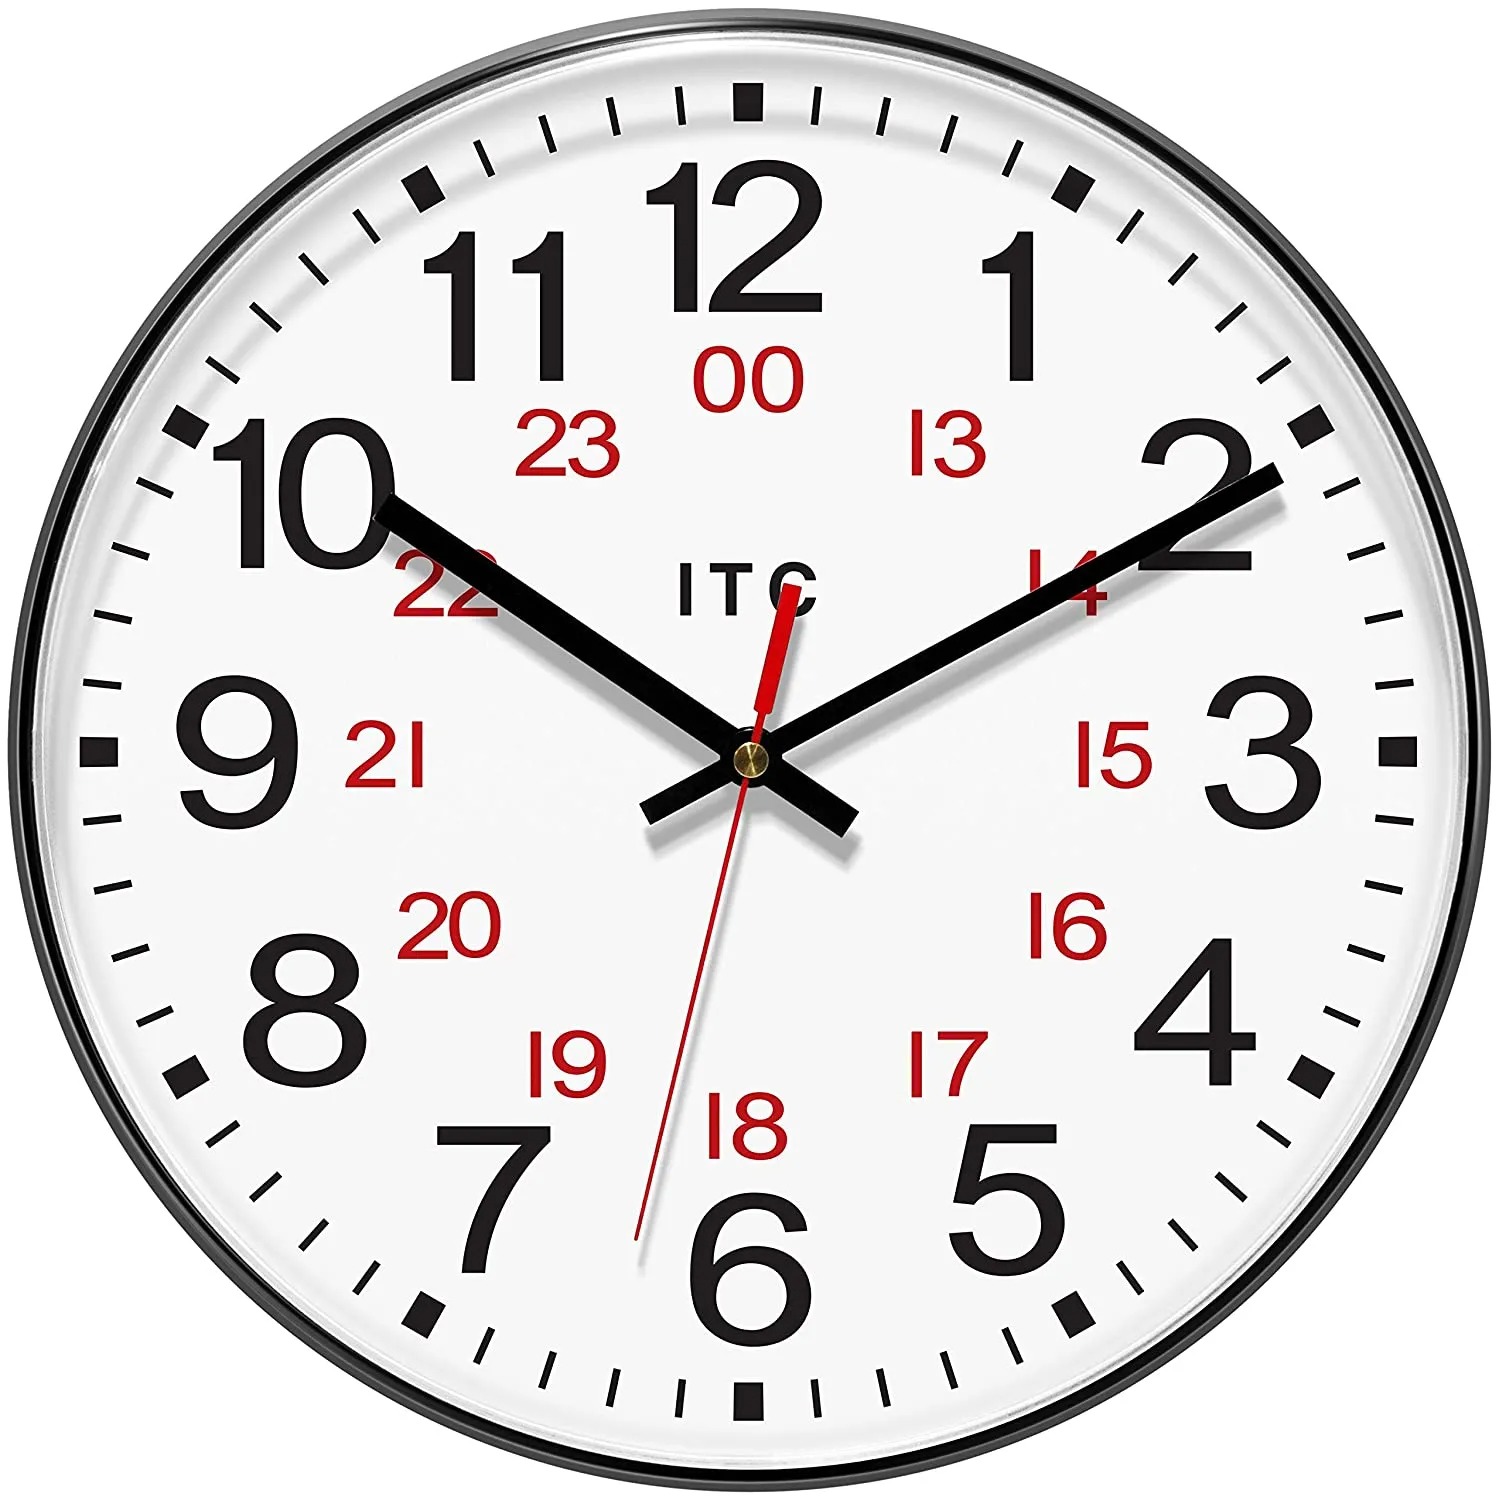 كيفية تحويل الوقت من نظام 24 ساعة إلى نظام 12 ساعة